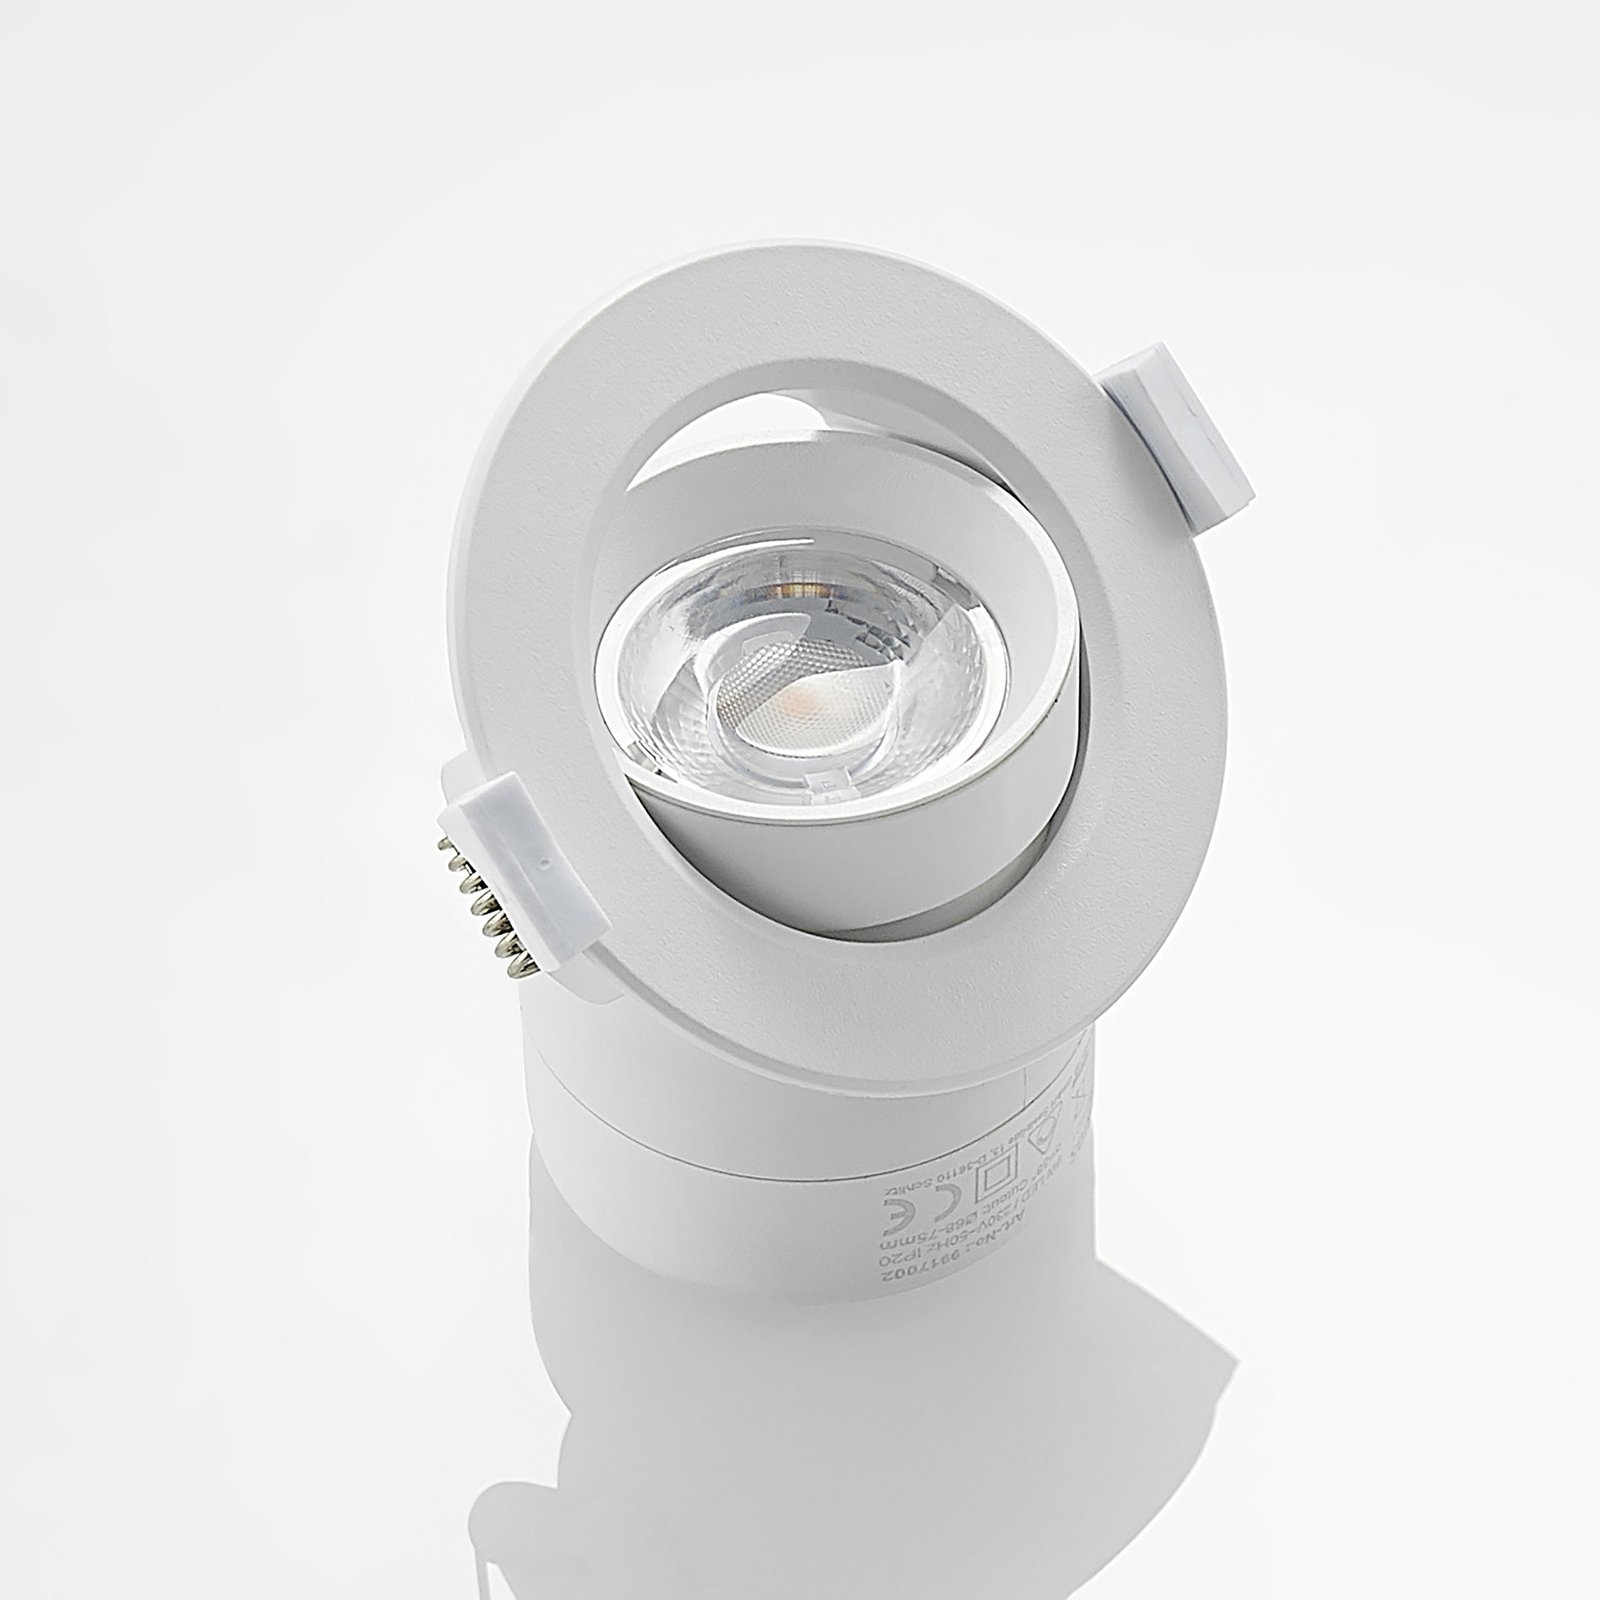 Prios LED vstavané svetlo Shimar, biele, 9 W, 3000K, stmievateľné